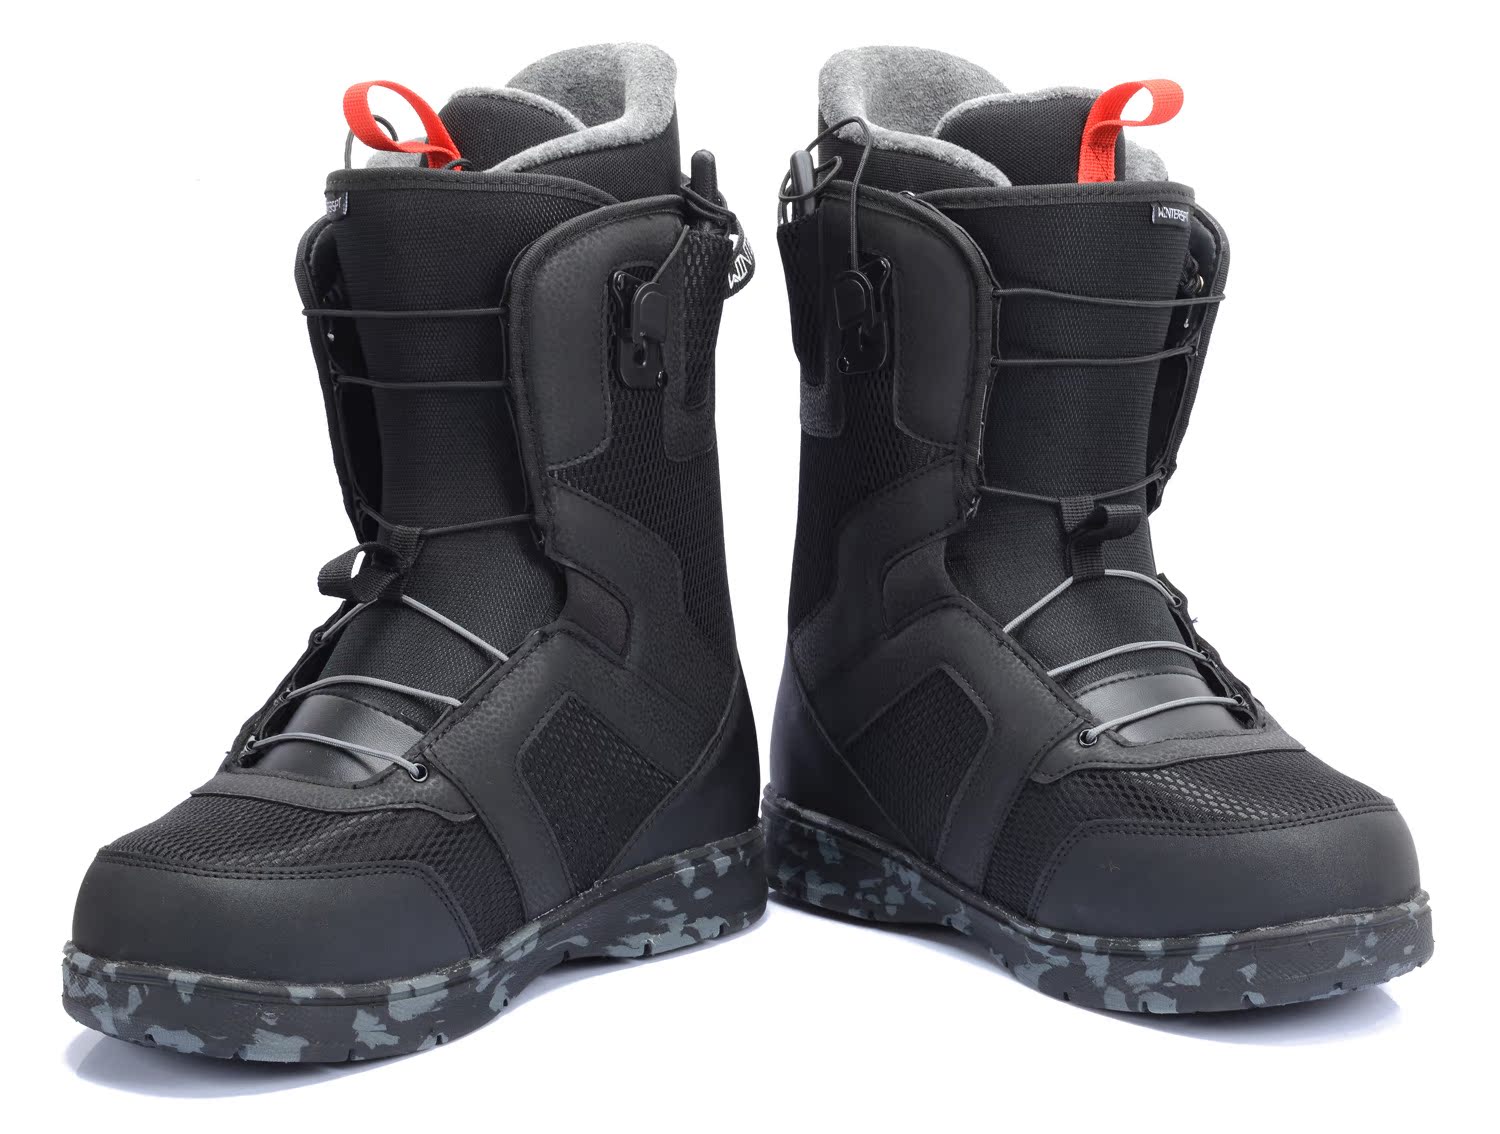 new 2015年新款 快速鞋带款单板滑雪鞋单板滑雪靴 ws-s-1505